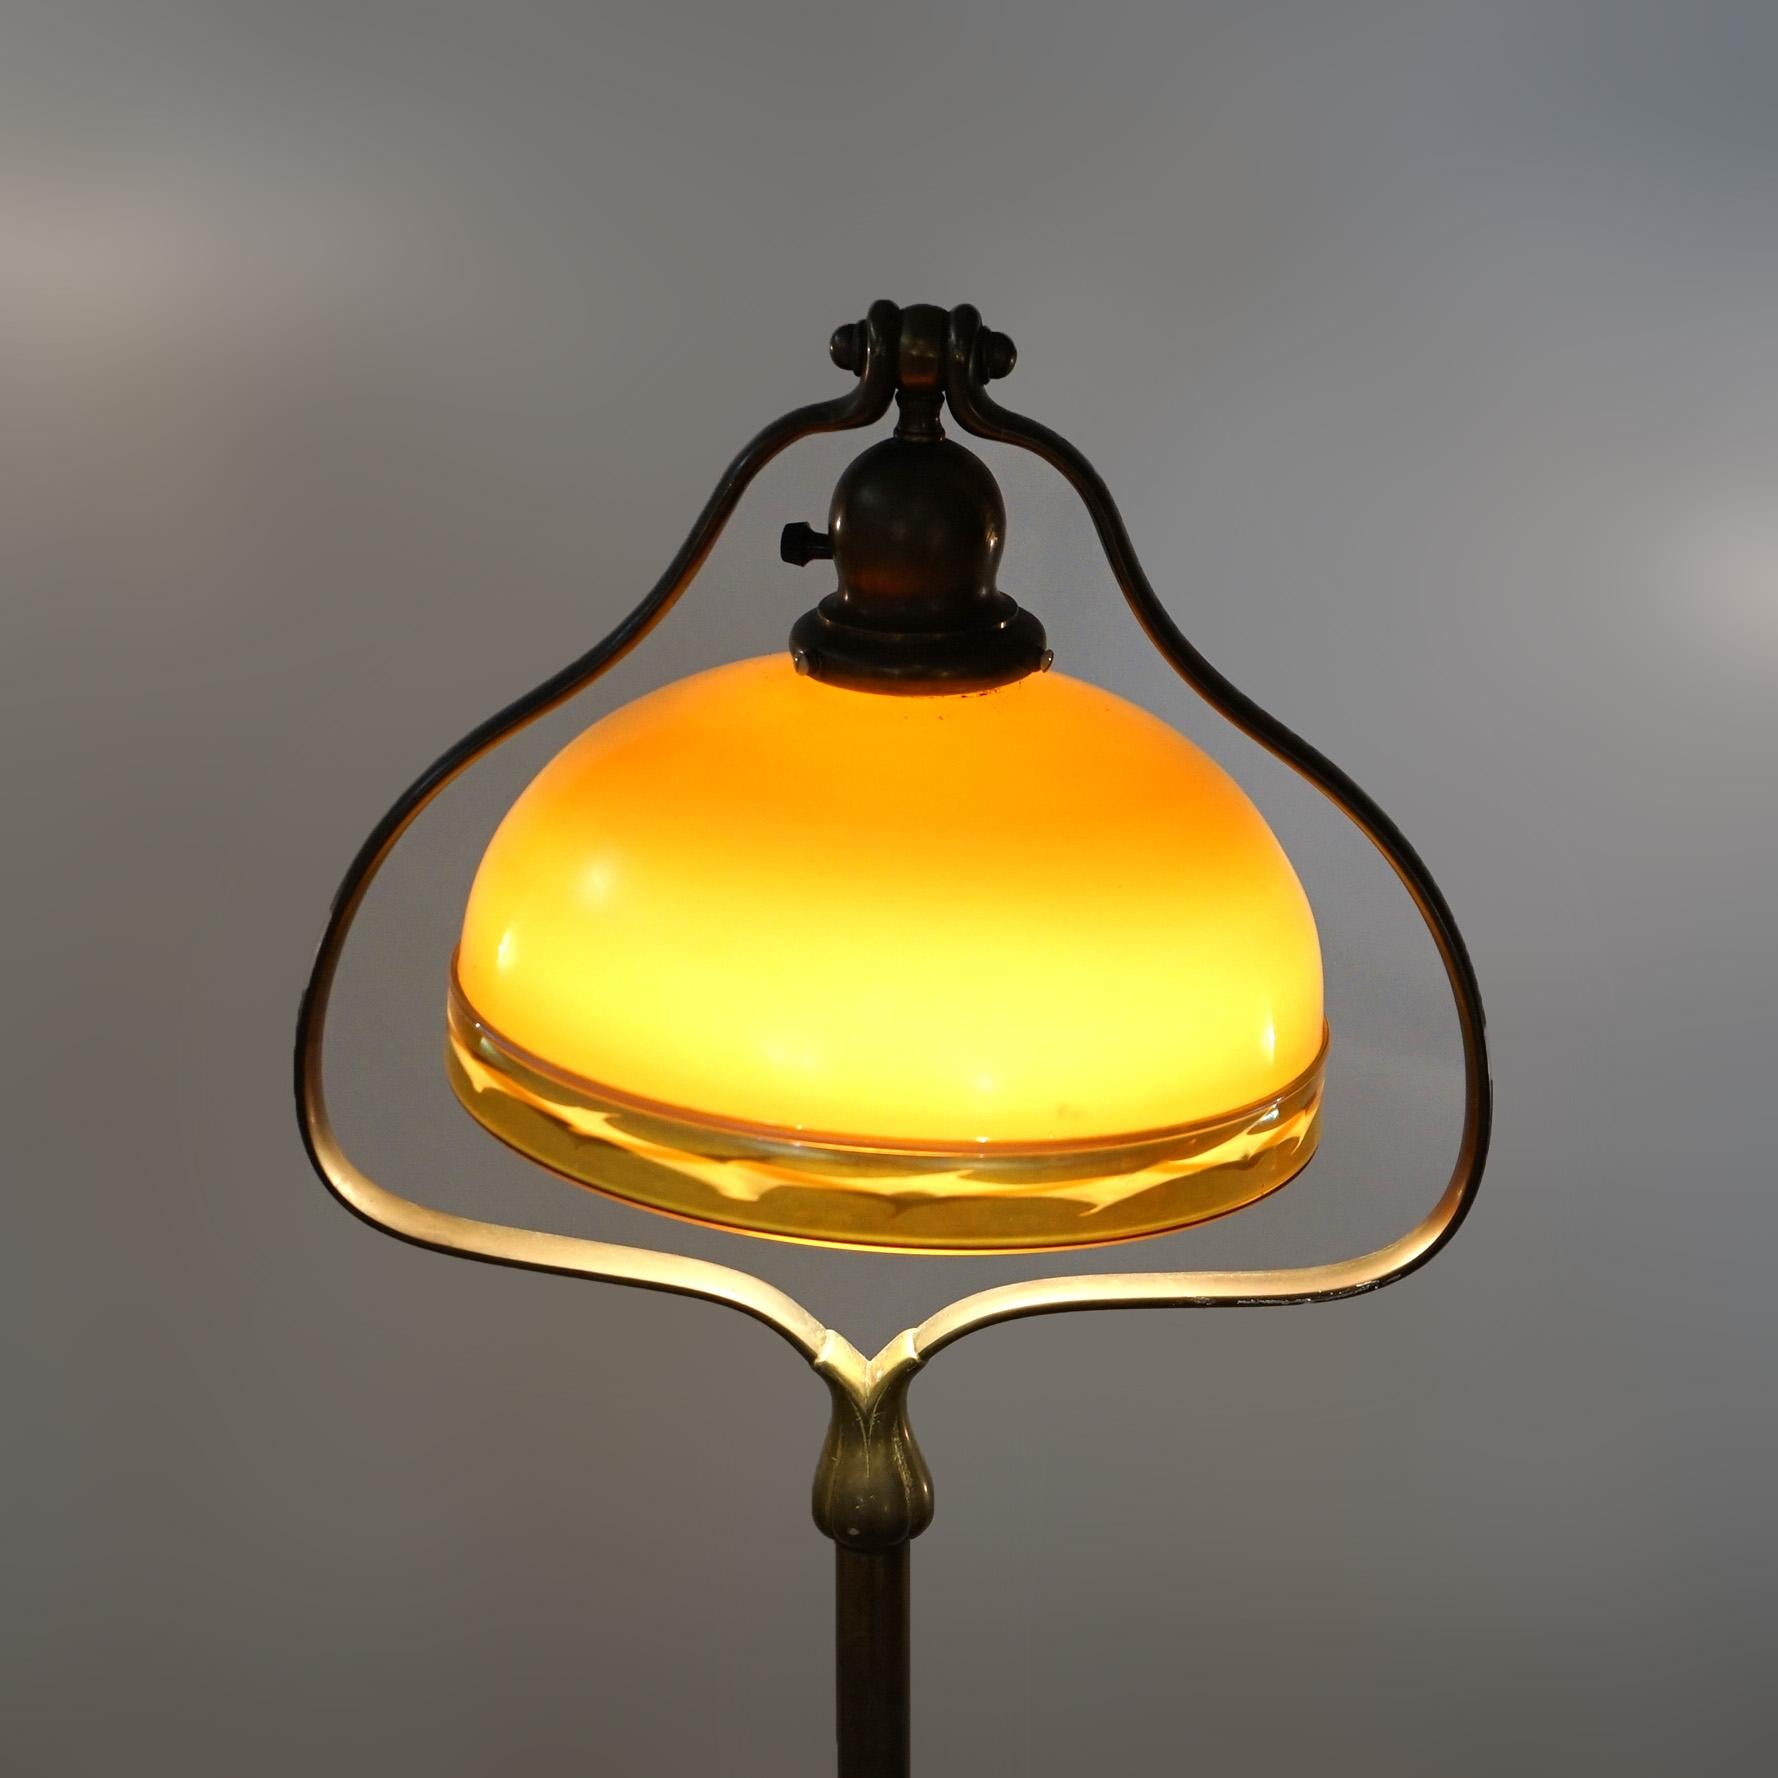 Antike Arts & Crafts Handel Messing Herzform Stehlampe mit Steuben dekoriert Glasschirm, c1910

Maße: 57,75''H x 13,25''B x 13,25''T